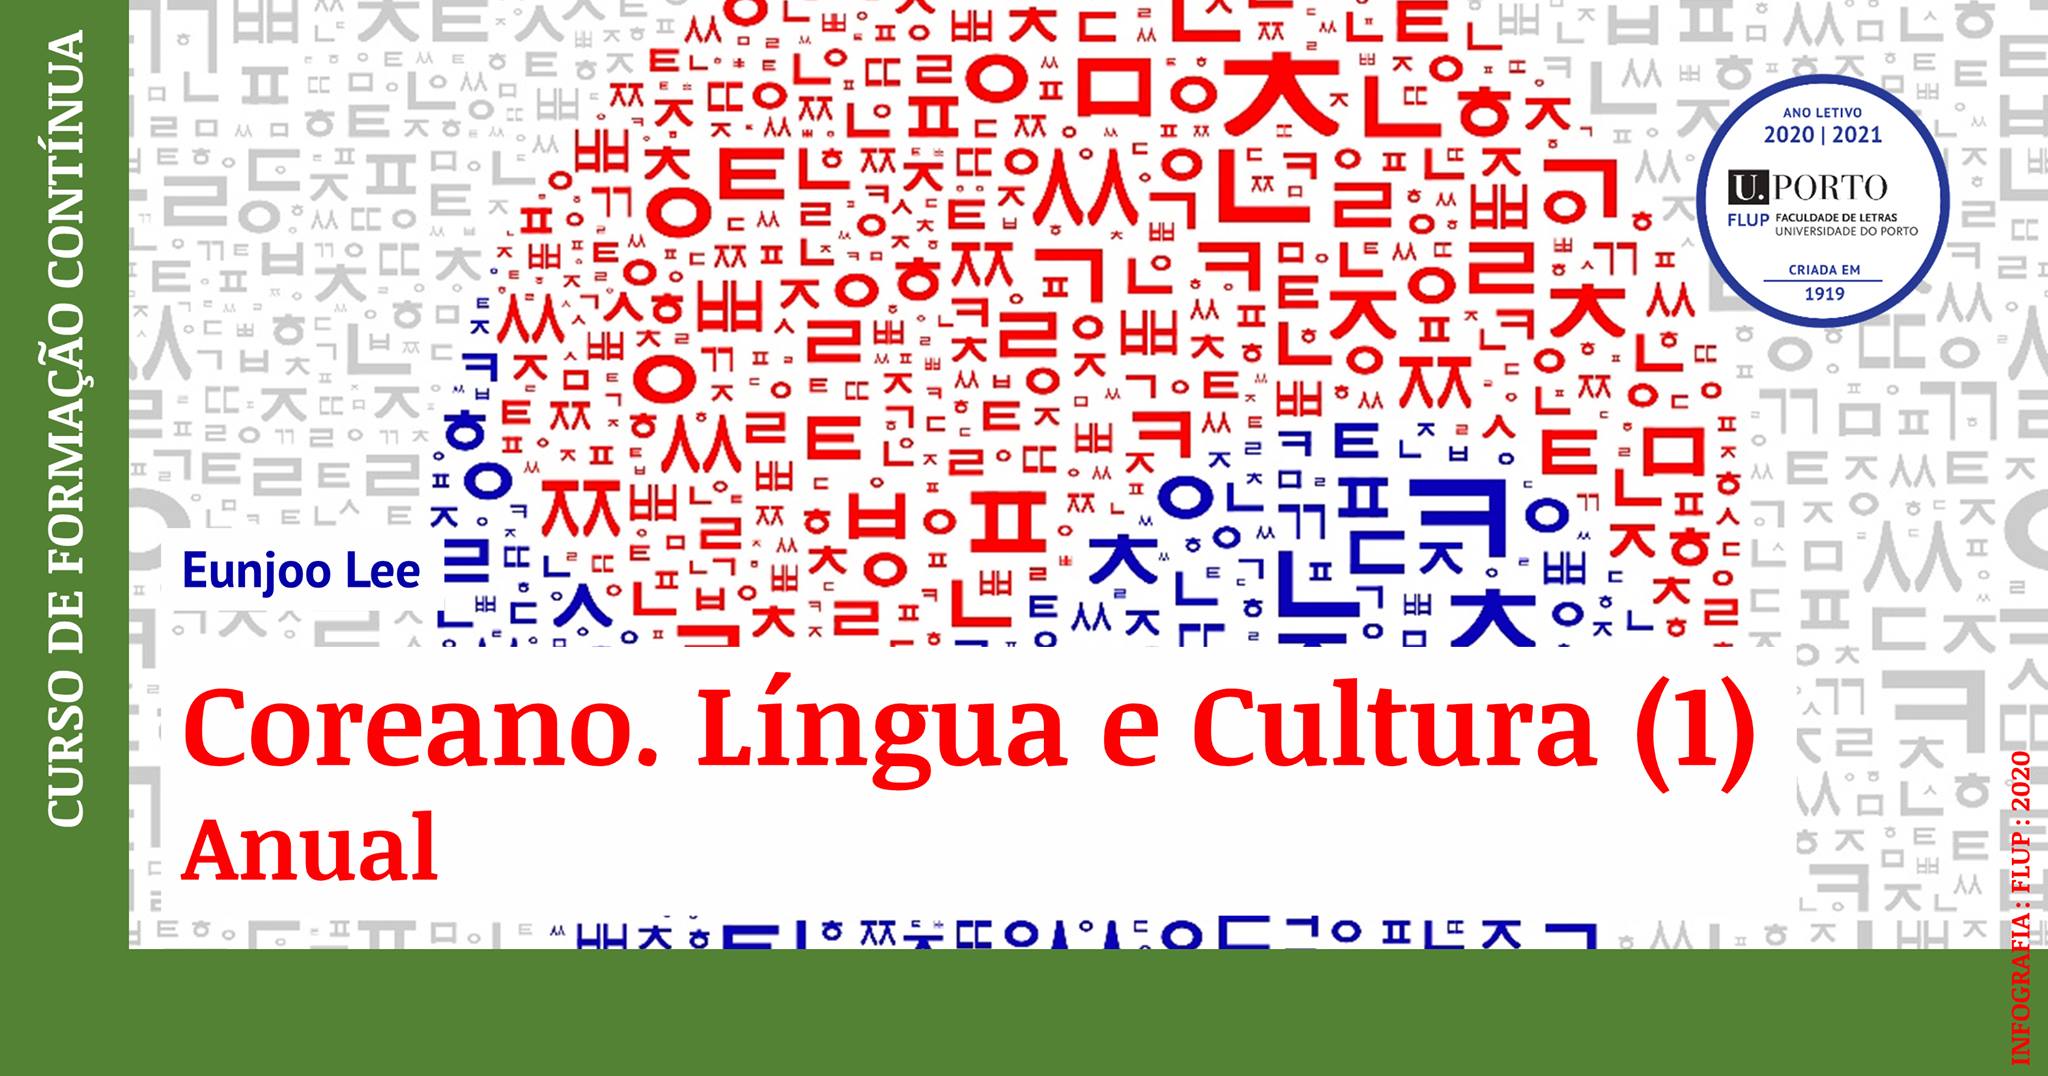 Coreano. Língua e Cultura (1) - Anual